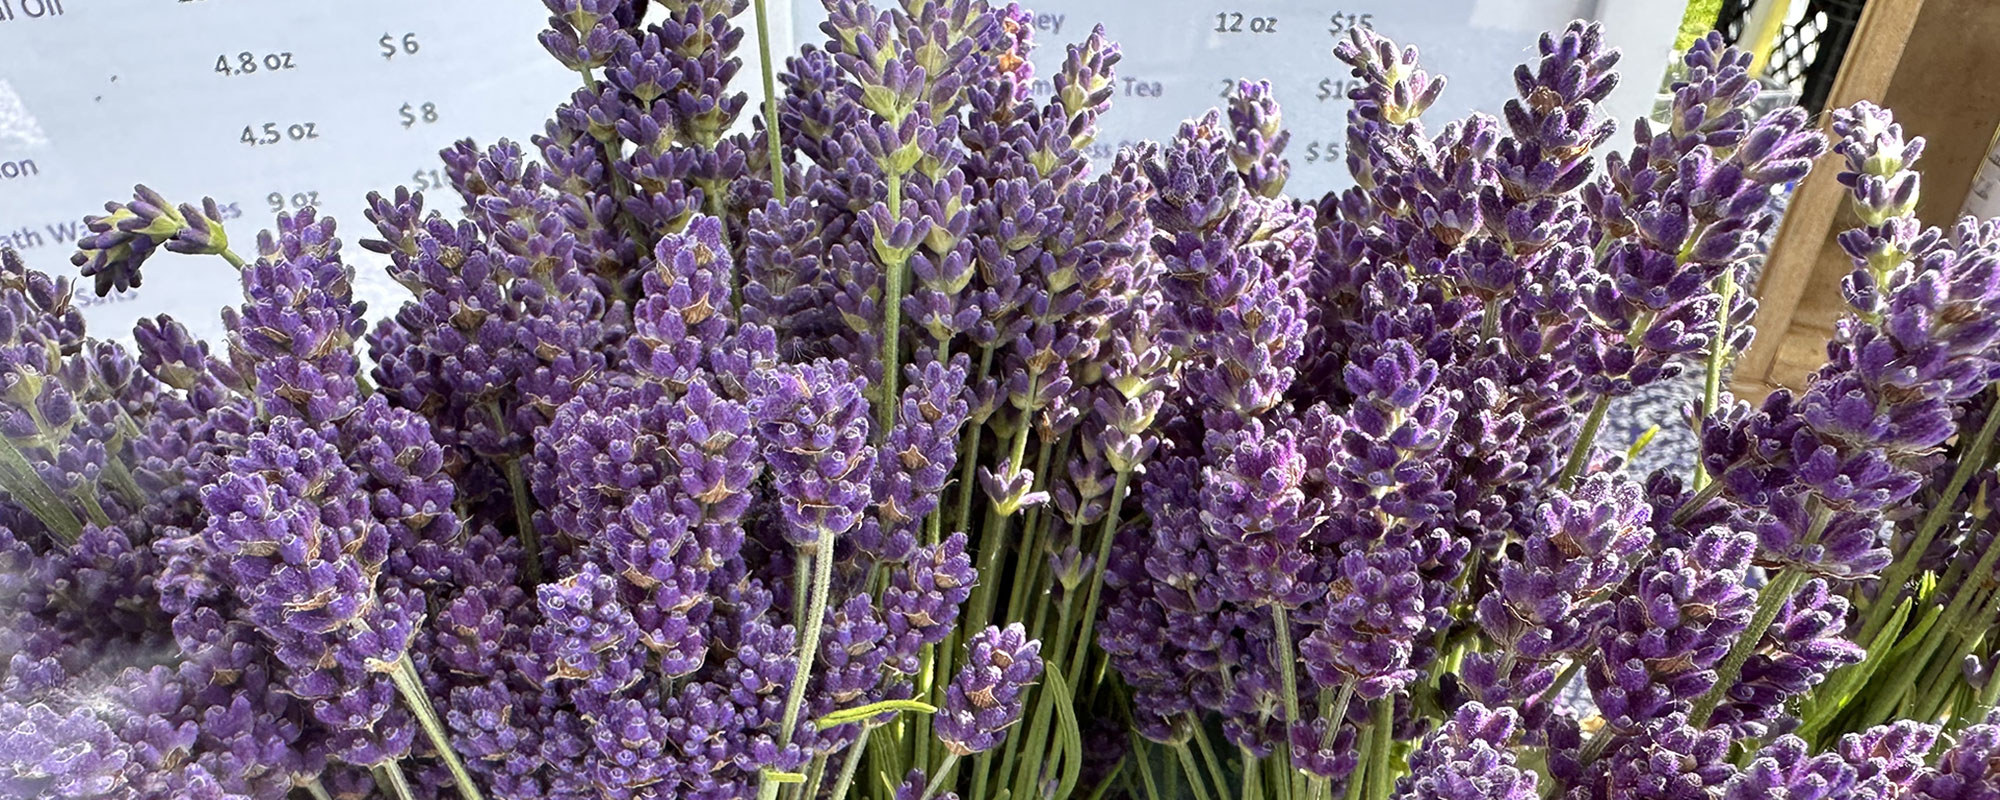 three oaks market header lavender